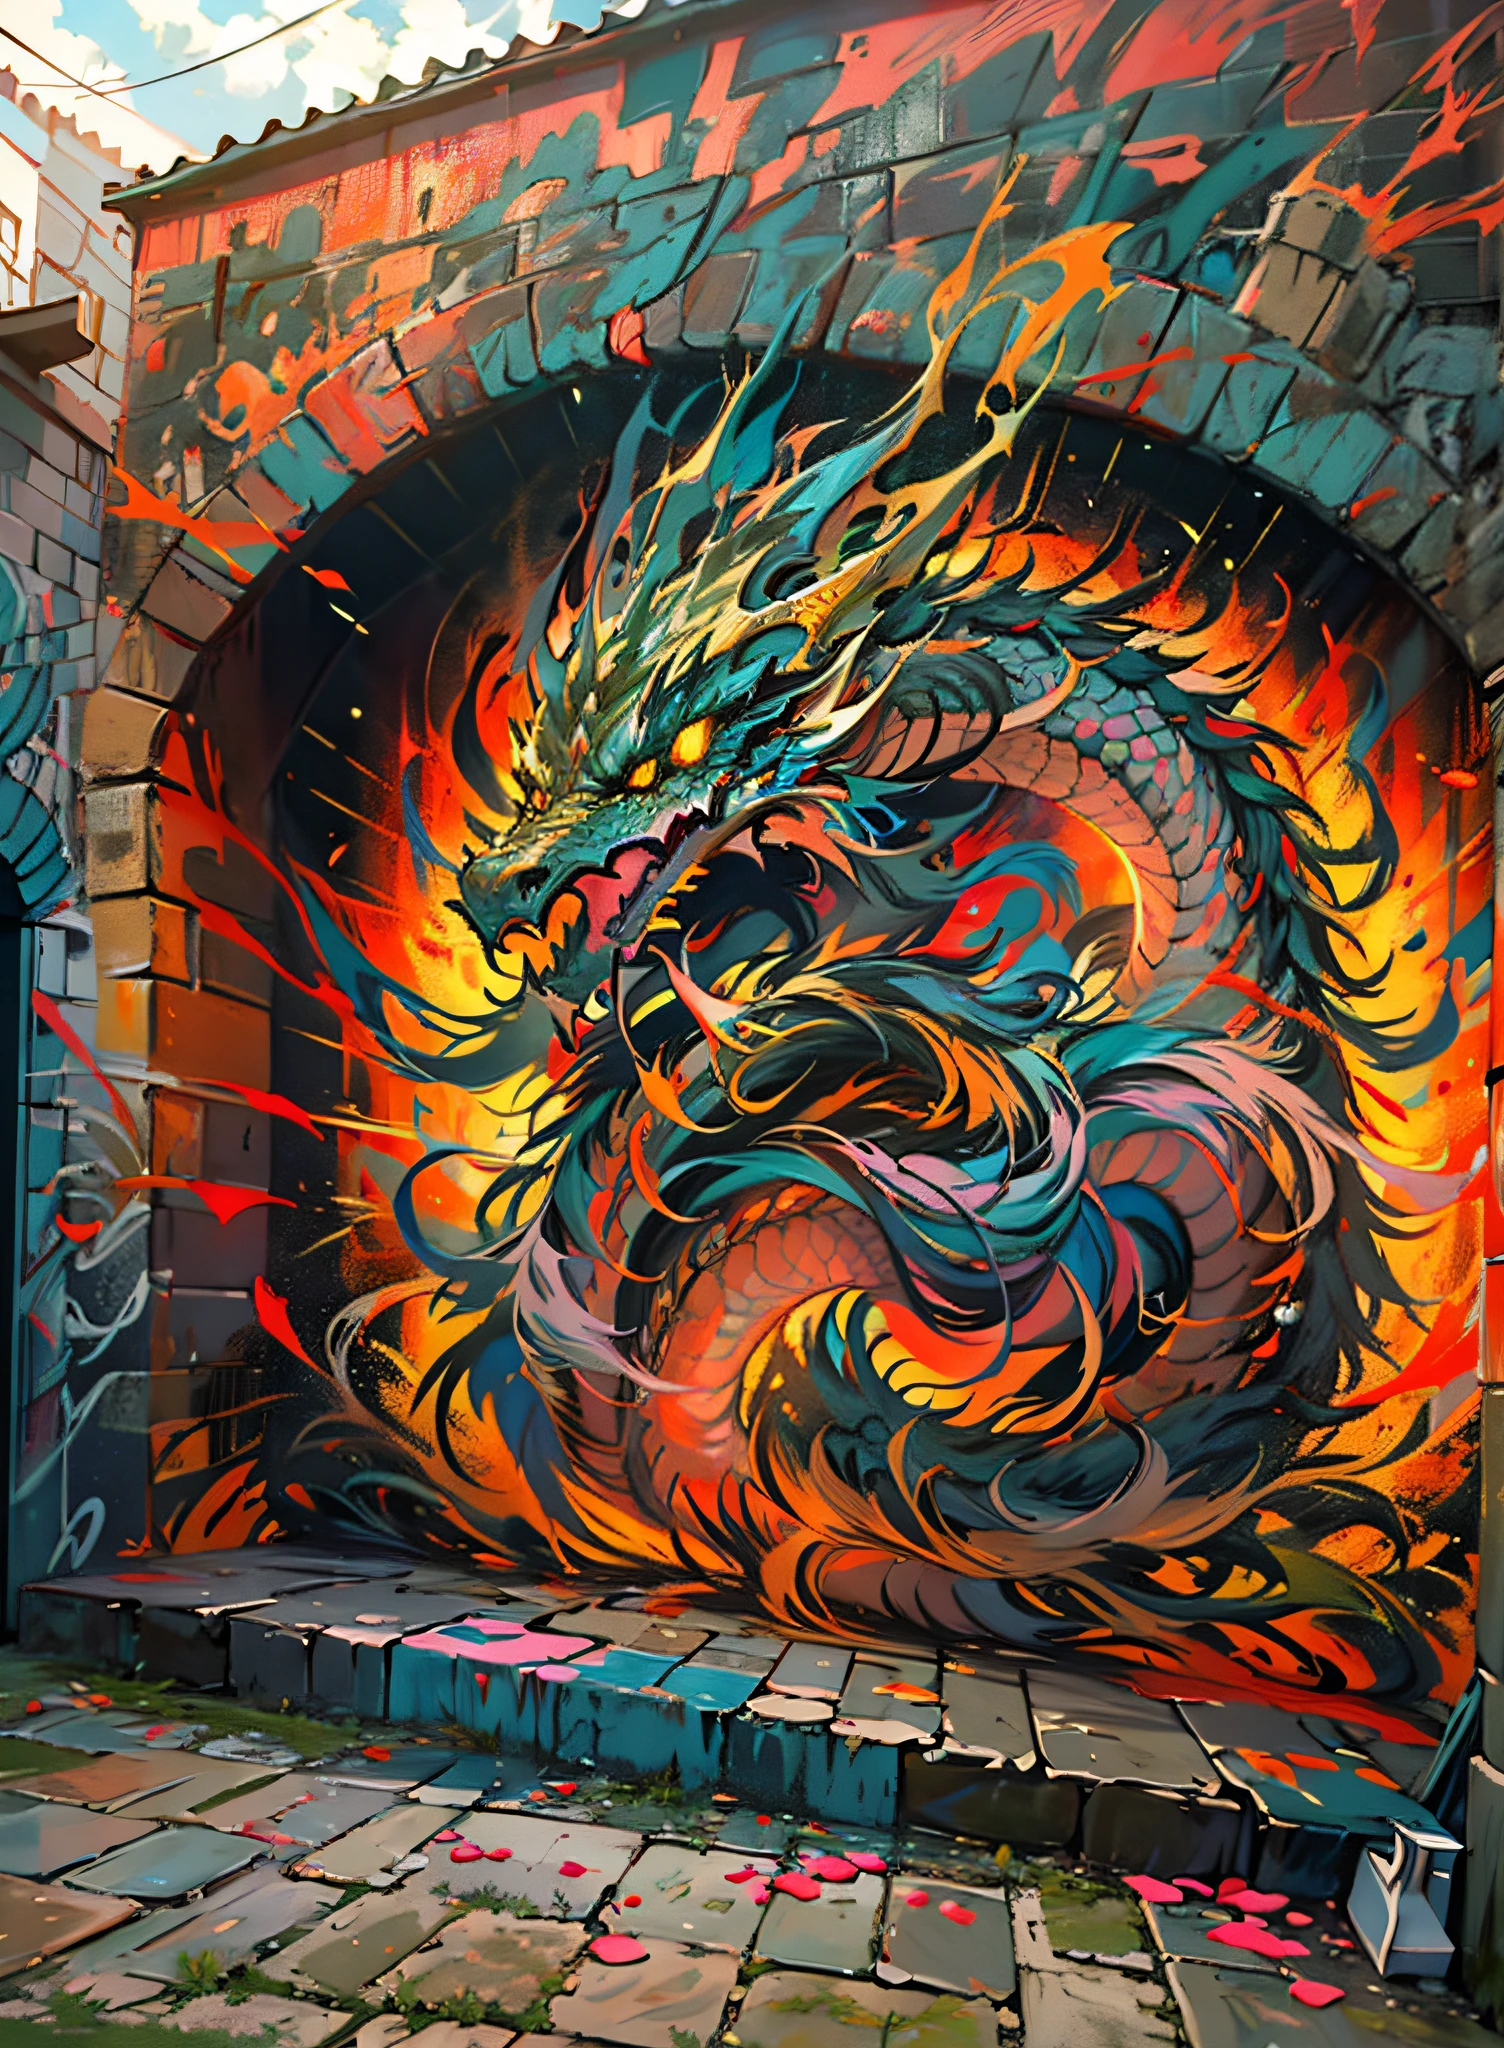 Drop Art , Cena cinematográfica - filmada no escuro,(extremamente detalhado), Dragão Oriental Pintura mural de alta resolução,((muros de um castelo)), grafite colorido,(( Drop Artdinâmico)) and vivid, cores vibrantes, pinceladas expressivas, vibe de arte de rua.32 megapixels